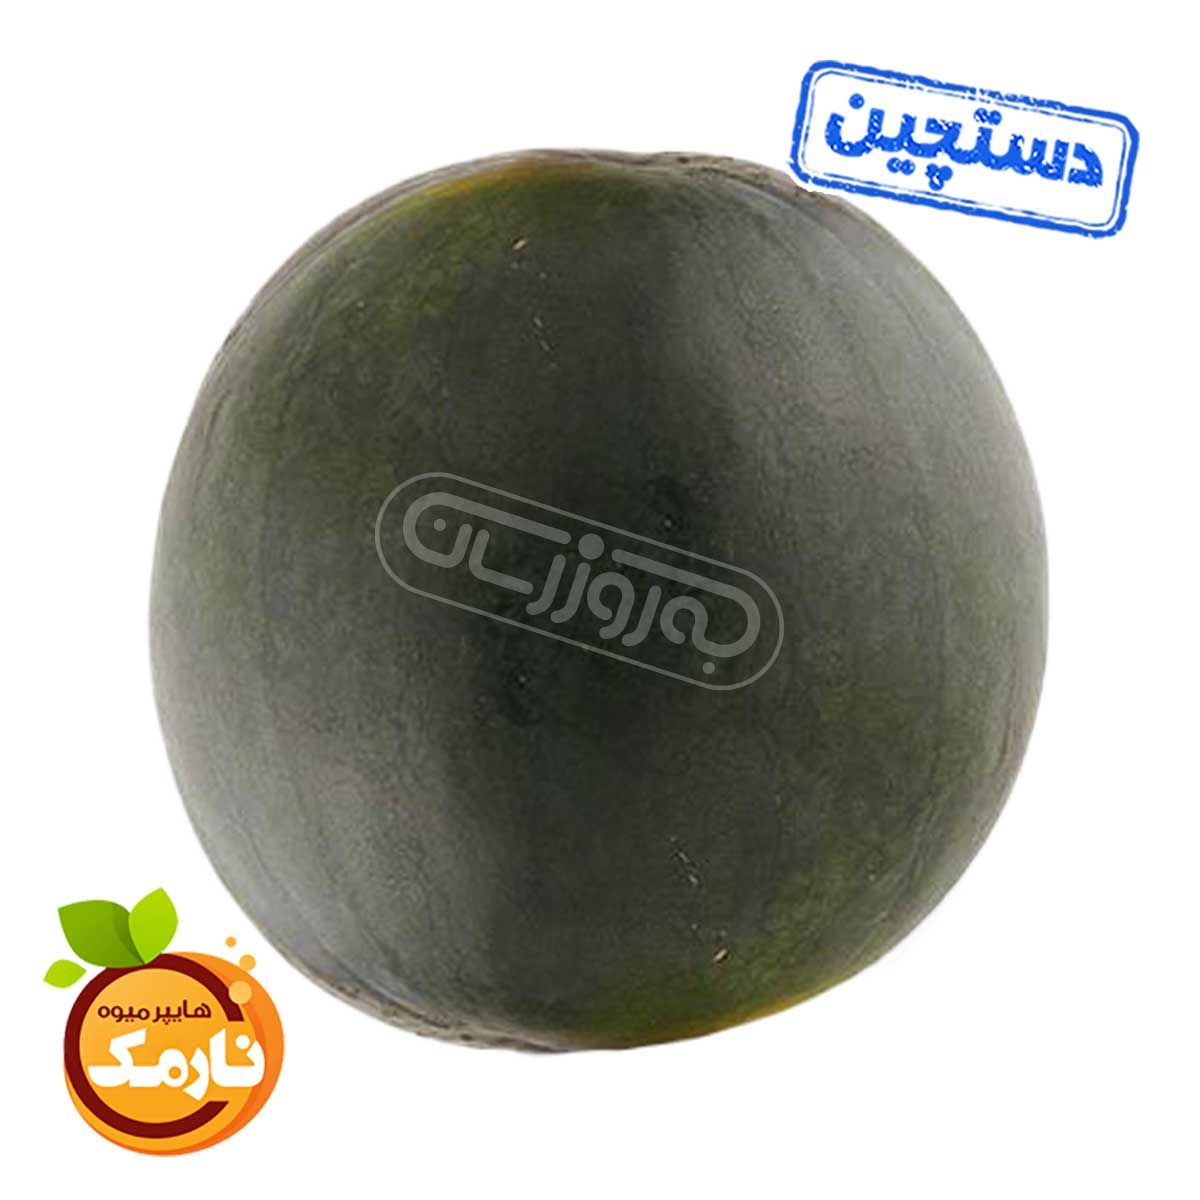 هندوانه محبوبی بزرگ دستچین هایپر میوه نارمک وزن حدود 8 تا 12 کیلوگرم